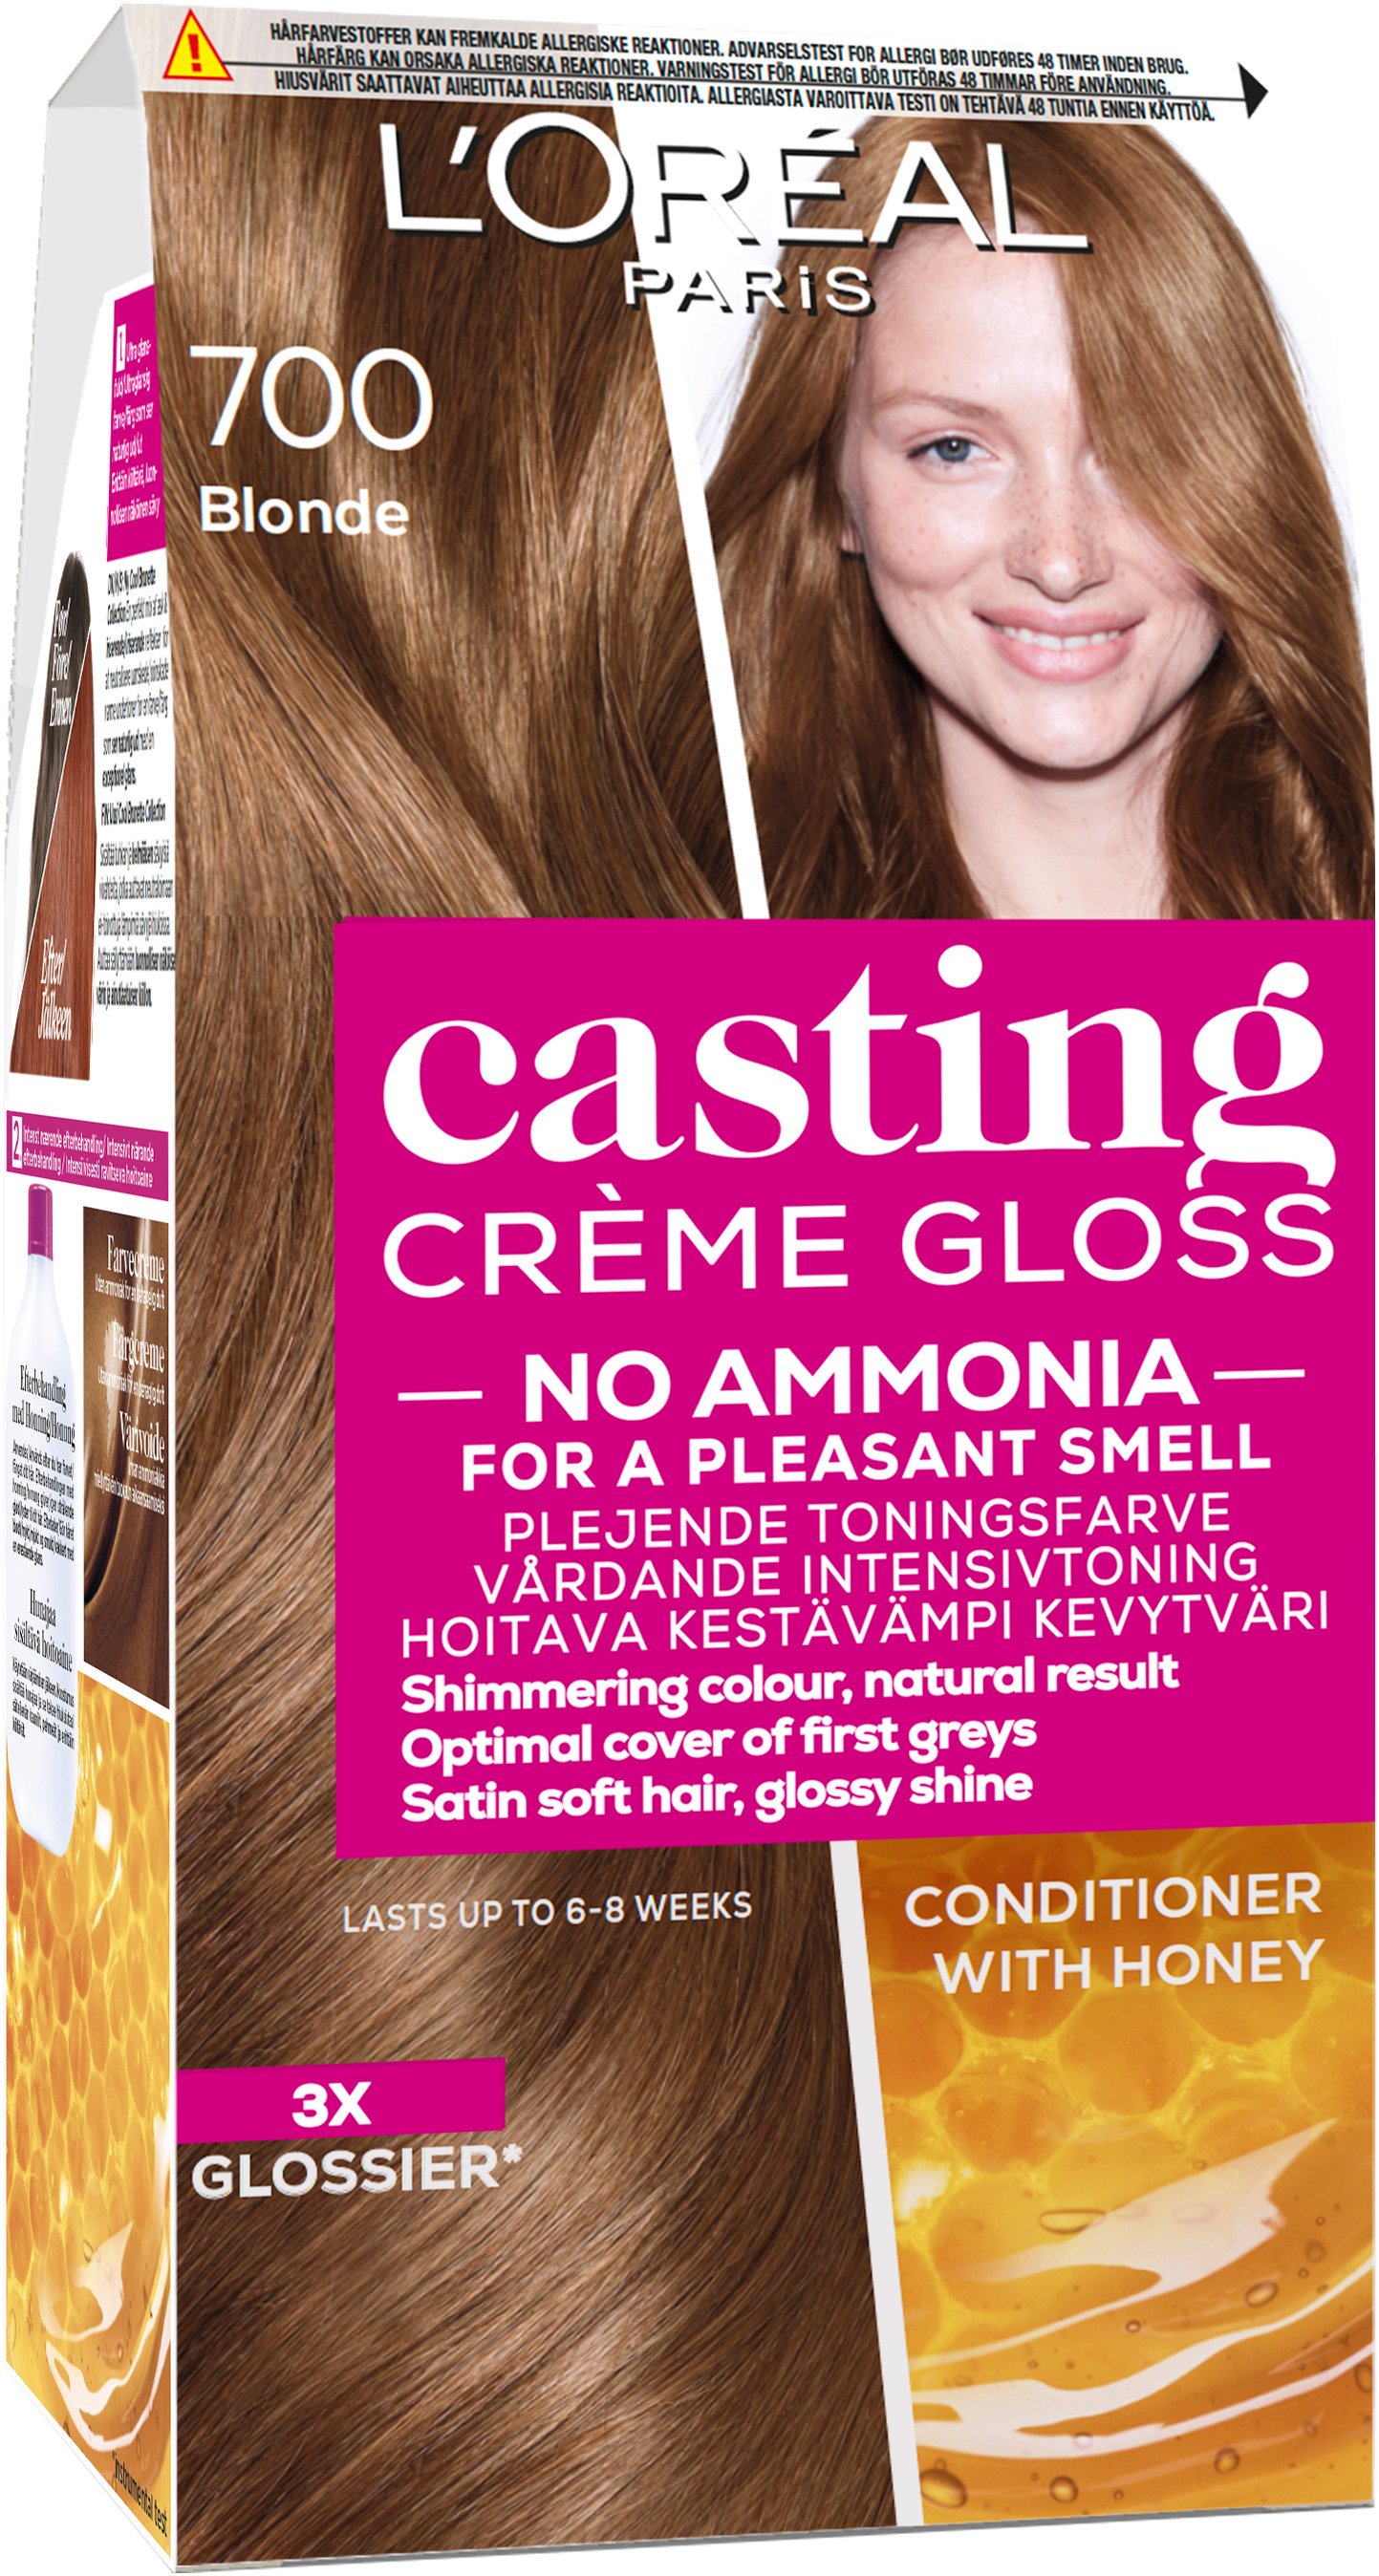 L'Oréal Paris Casting Creme Gloss 700 Blonde